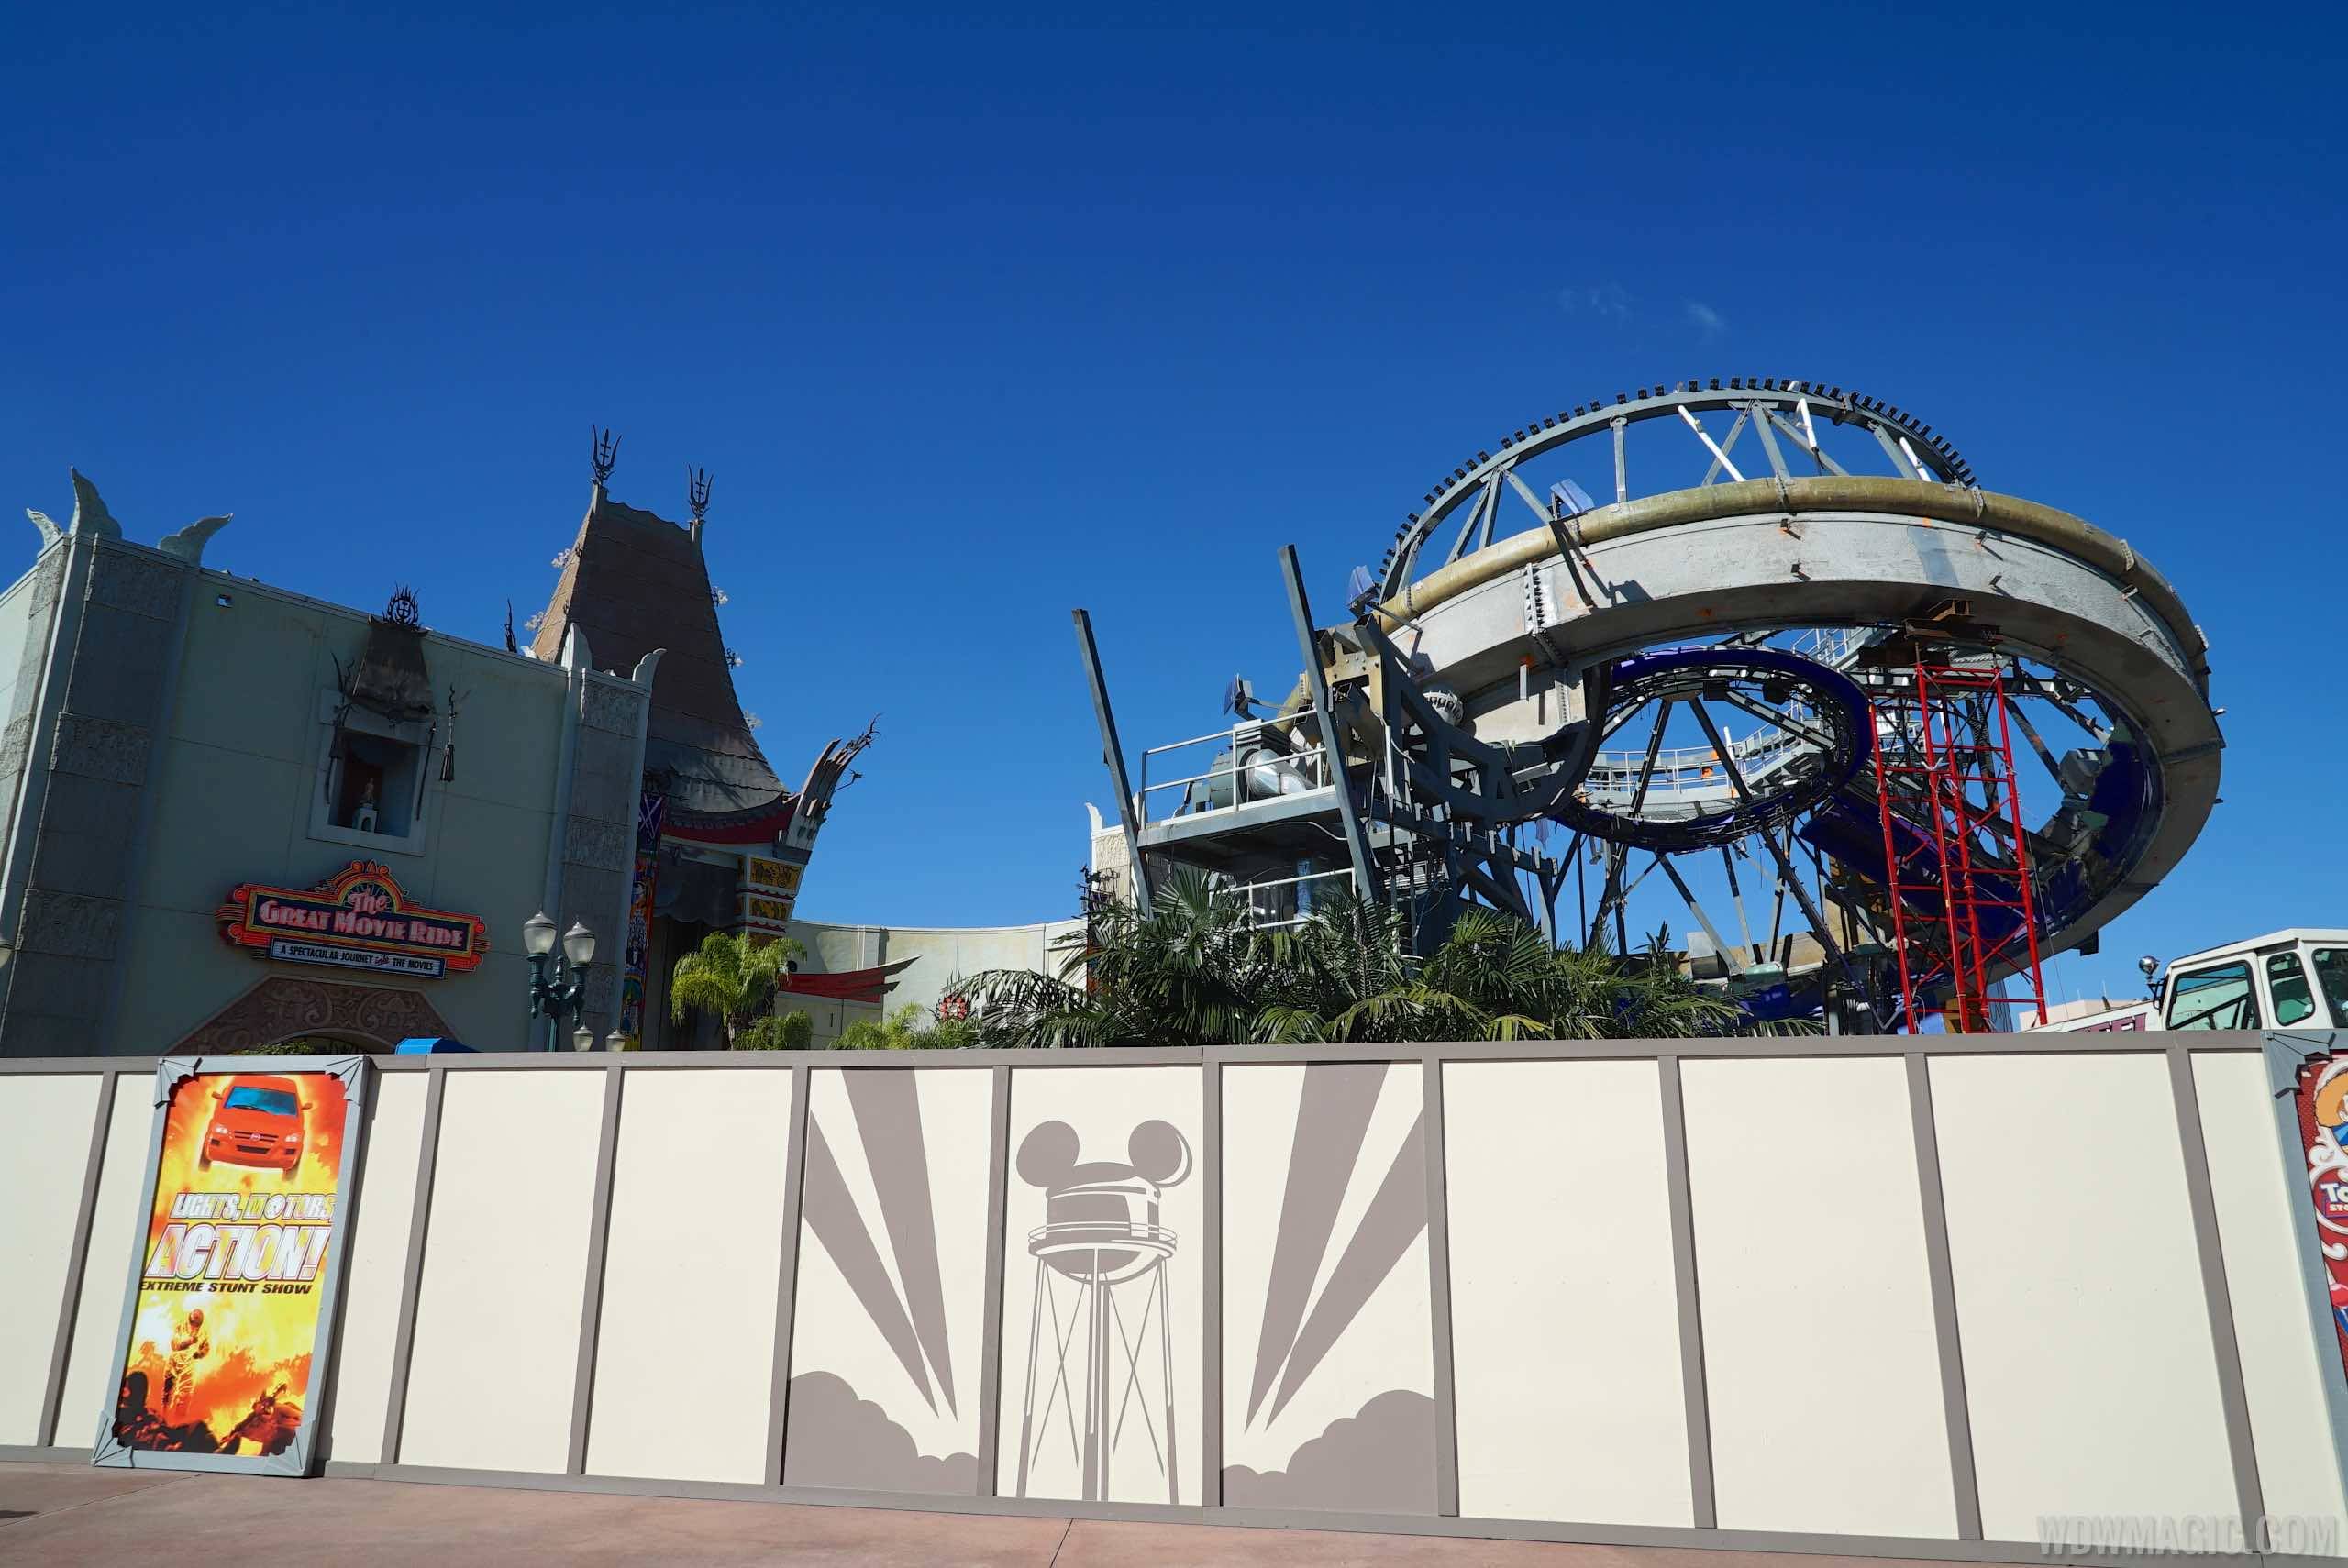 PHOTOS - Sorcerer Mickey Hat icon demolition update